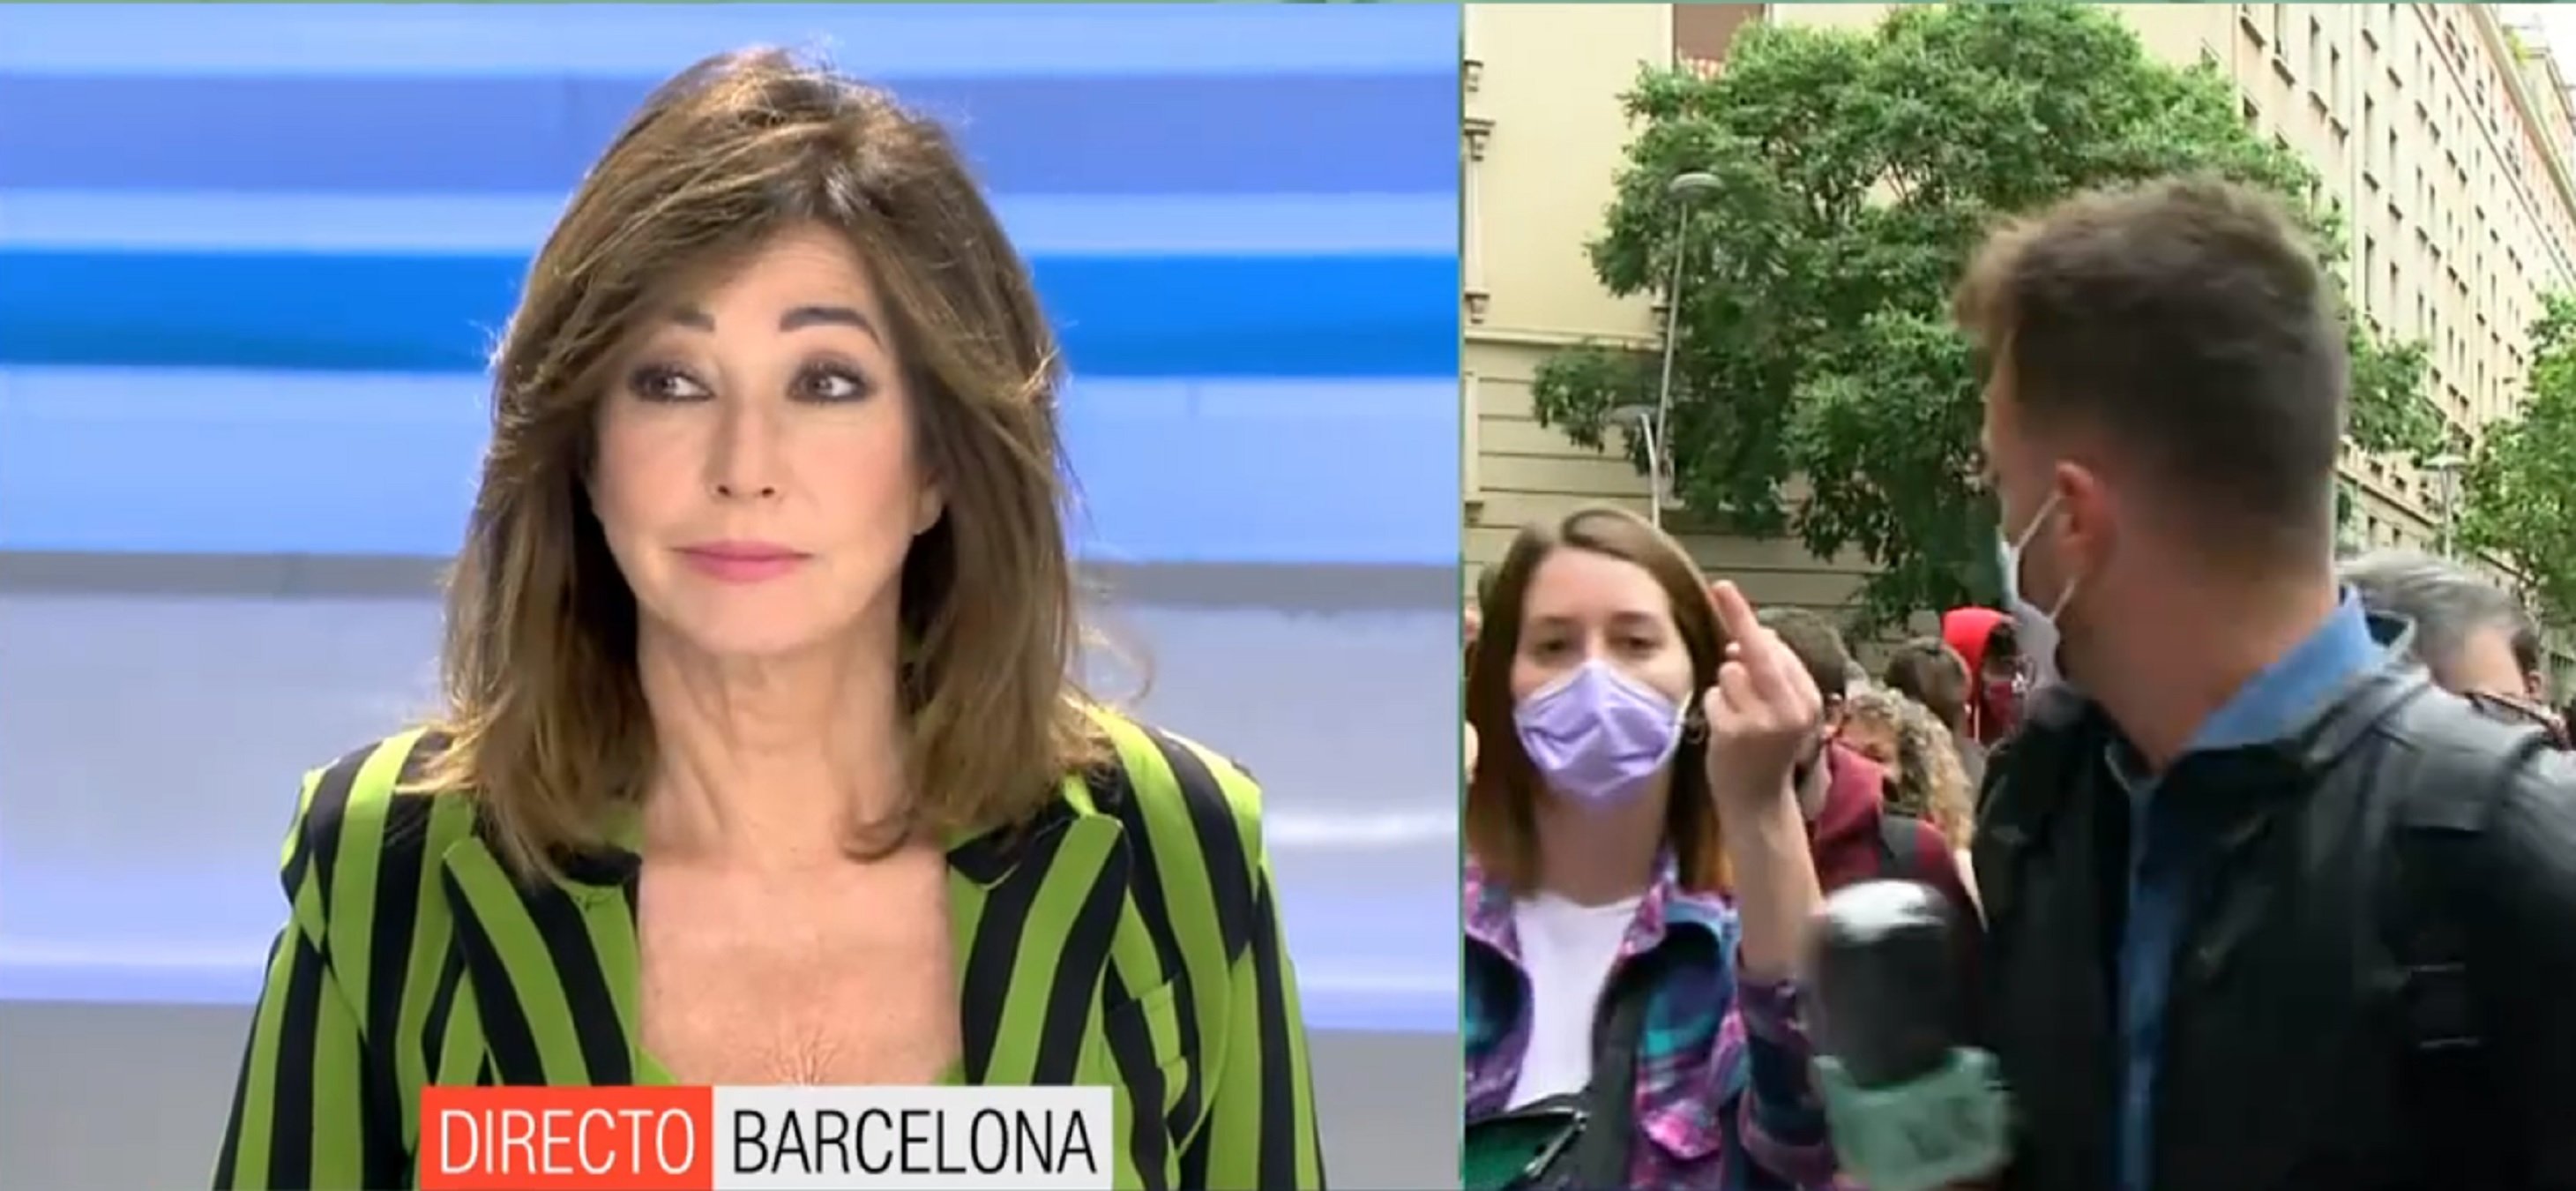 Ana Rosa Quintana, escridassada a BCN, insulta una manifestant catalana: "Tonta"